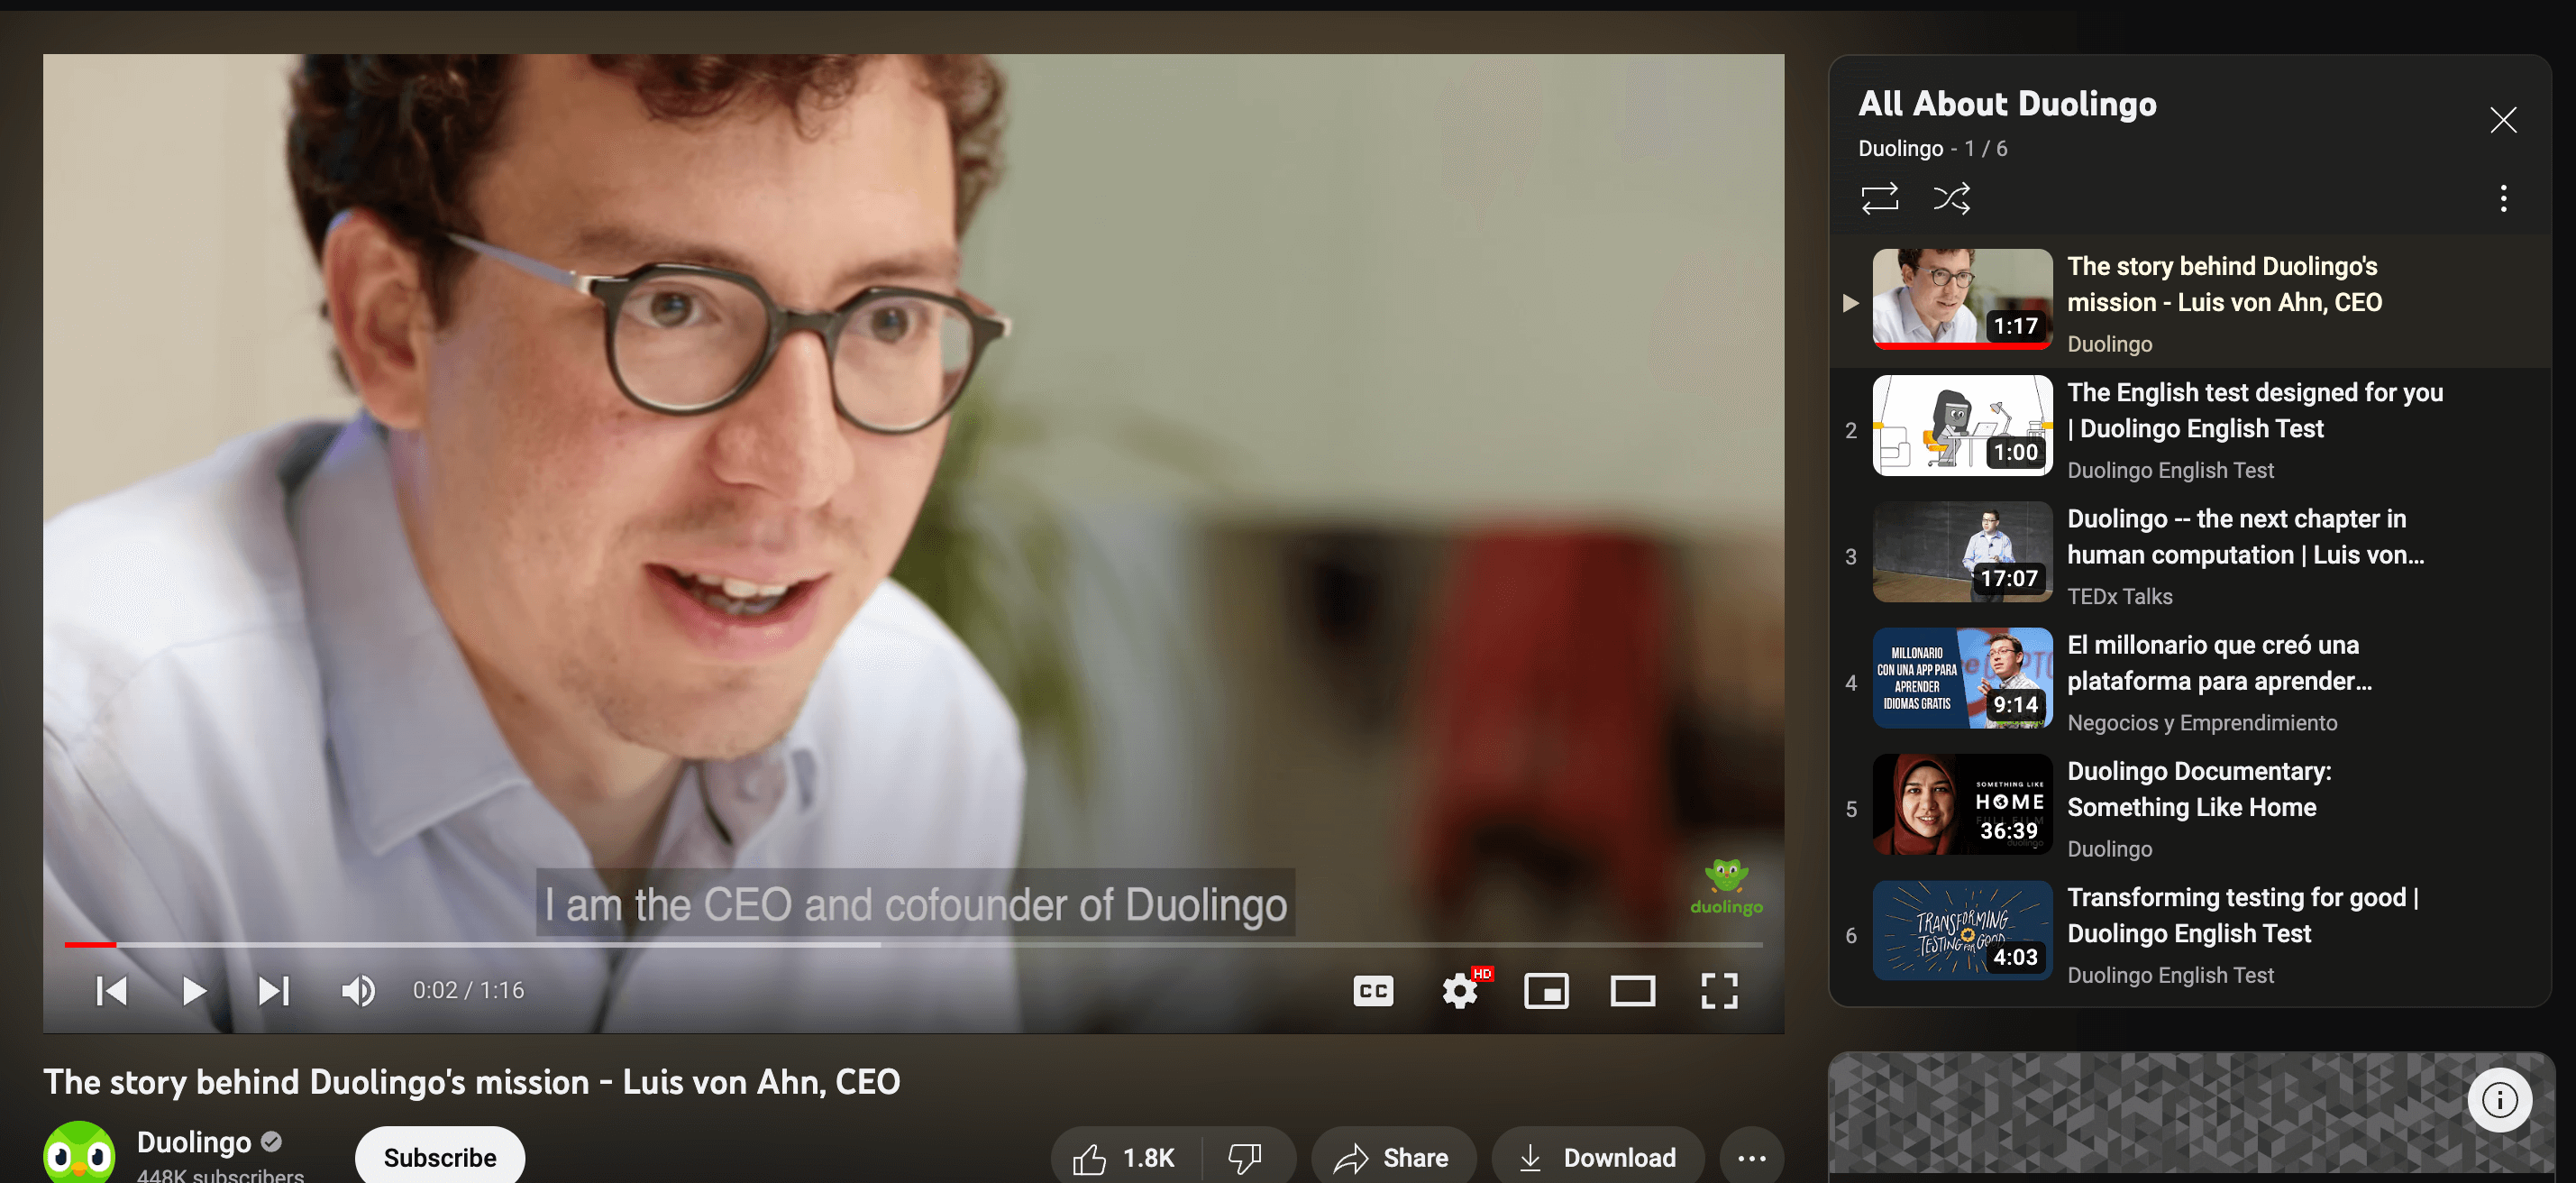 لیست پخش duolingo یوتیوب برای بینندگان جدید